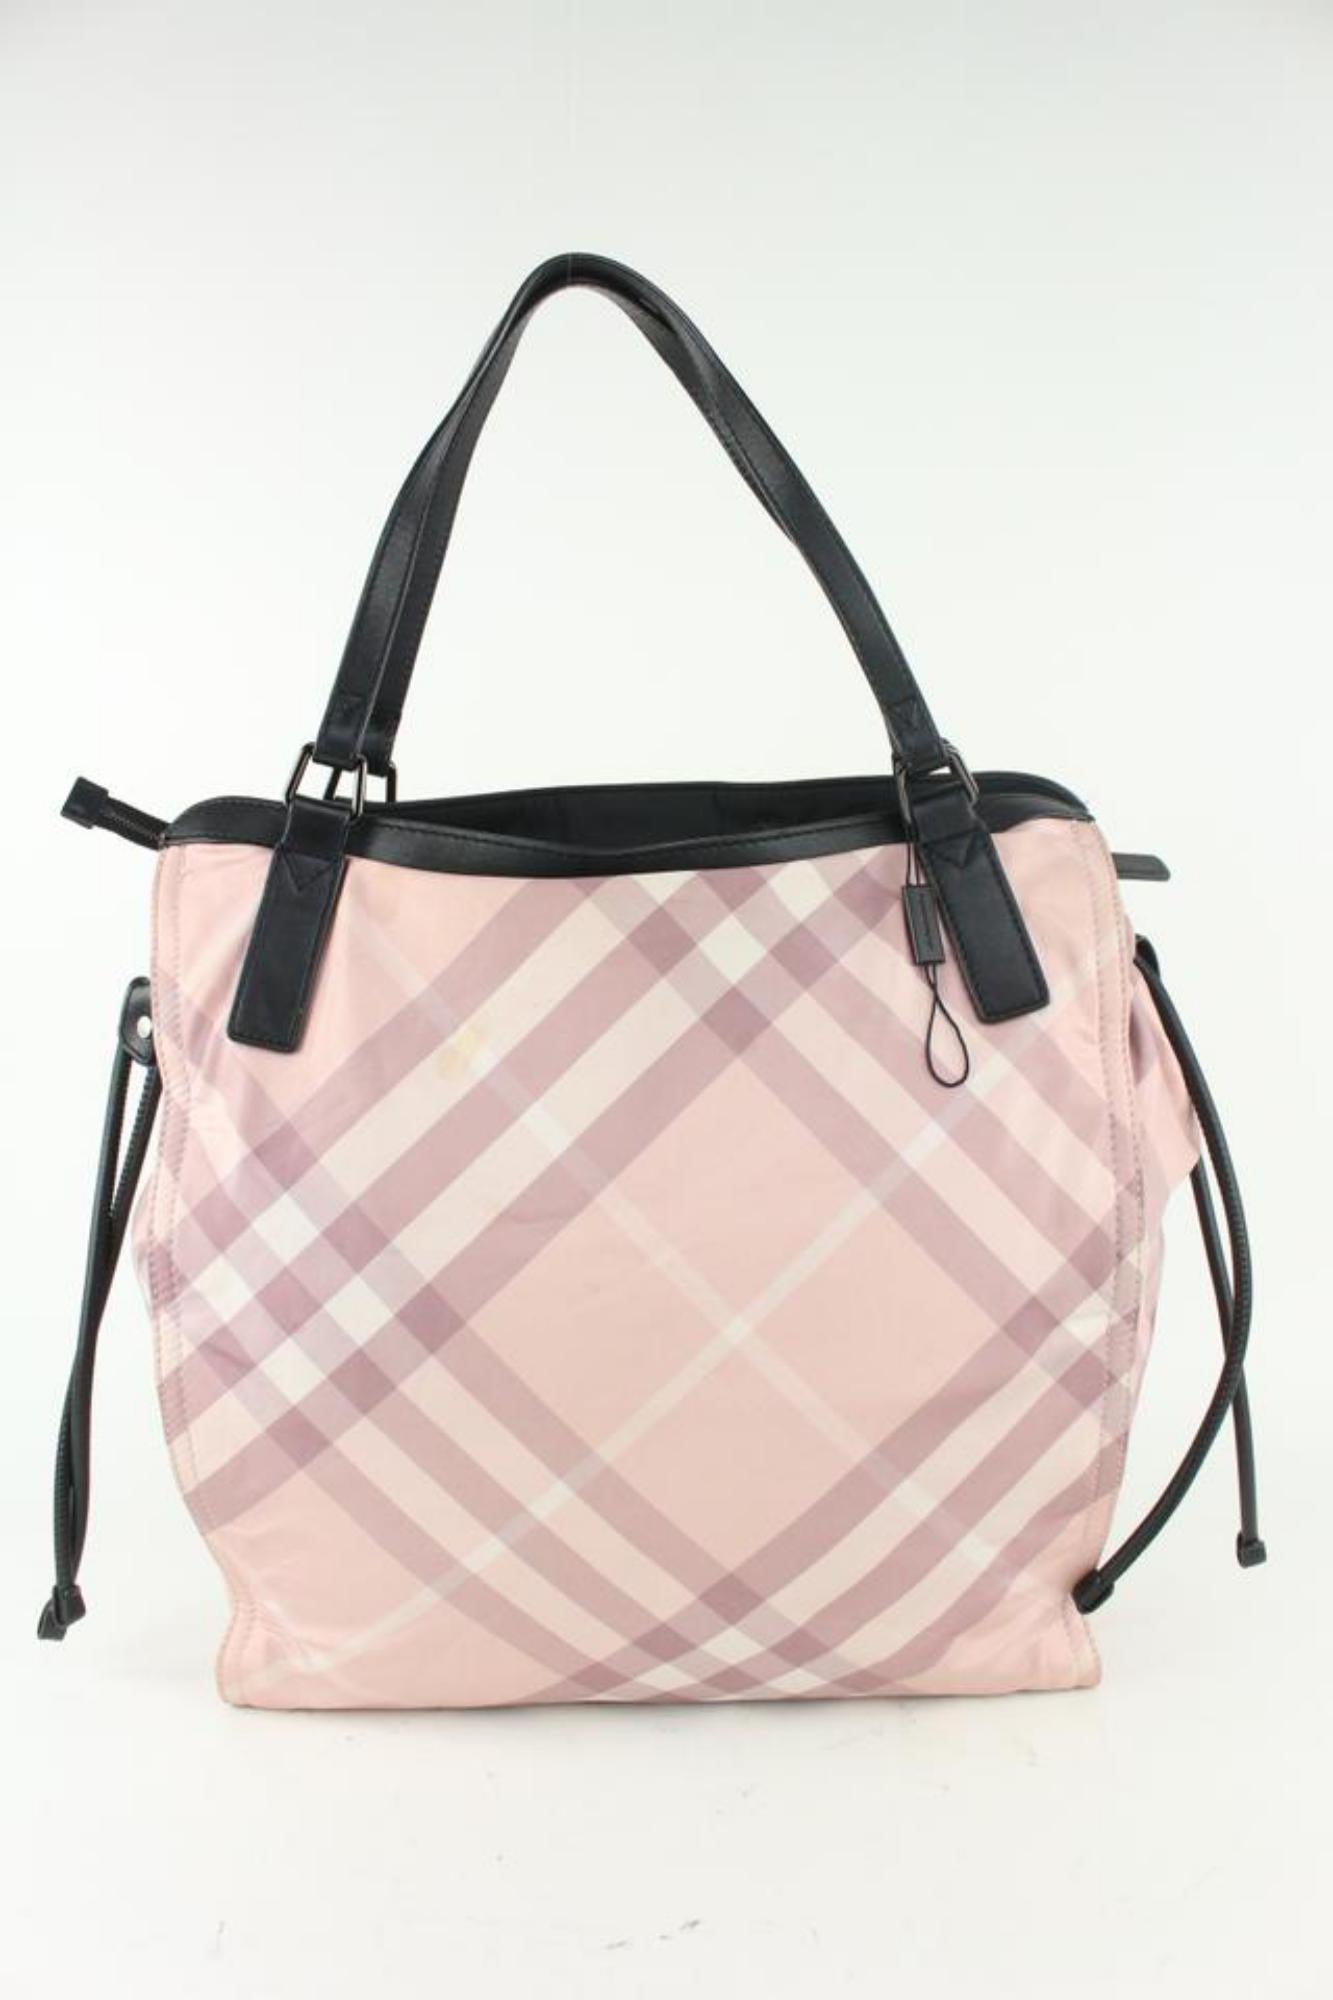 Burberry Pink Nova Check Shopper Tote Bag 928bur79 For Sale 2